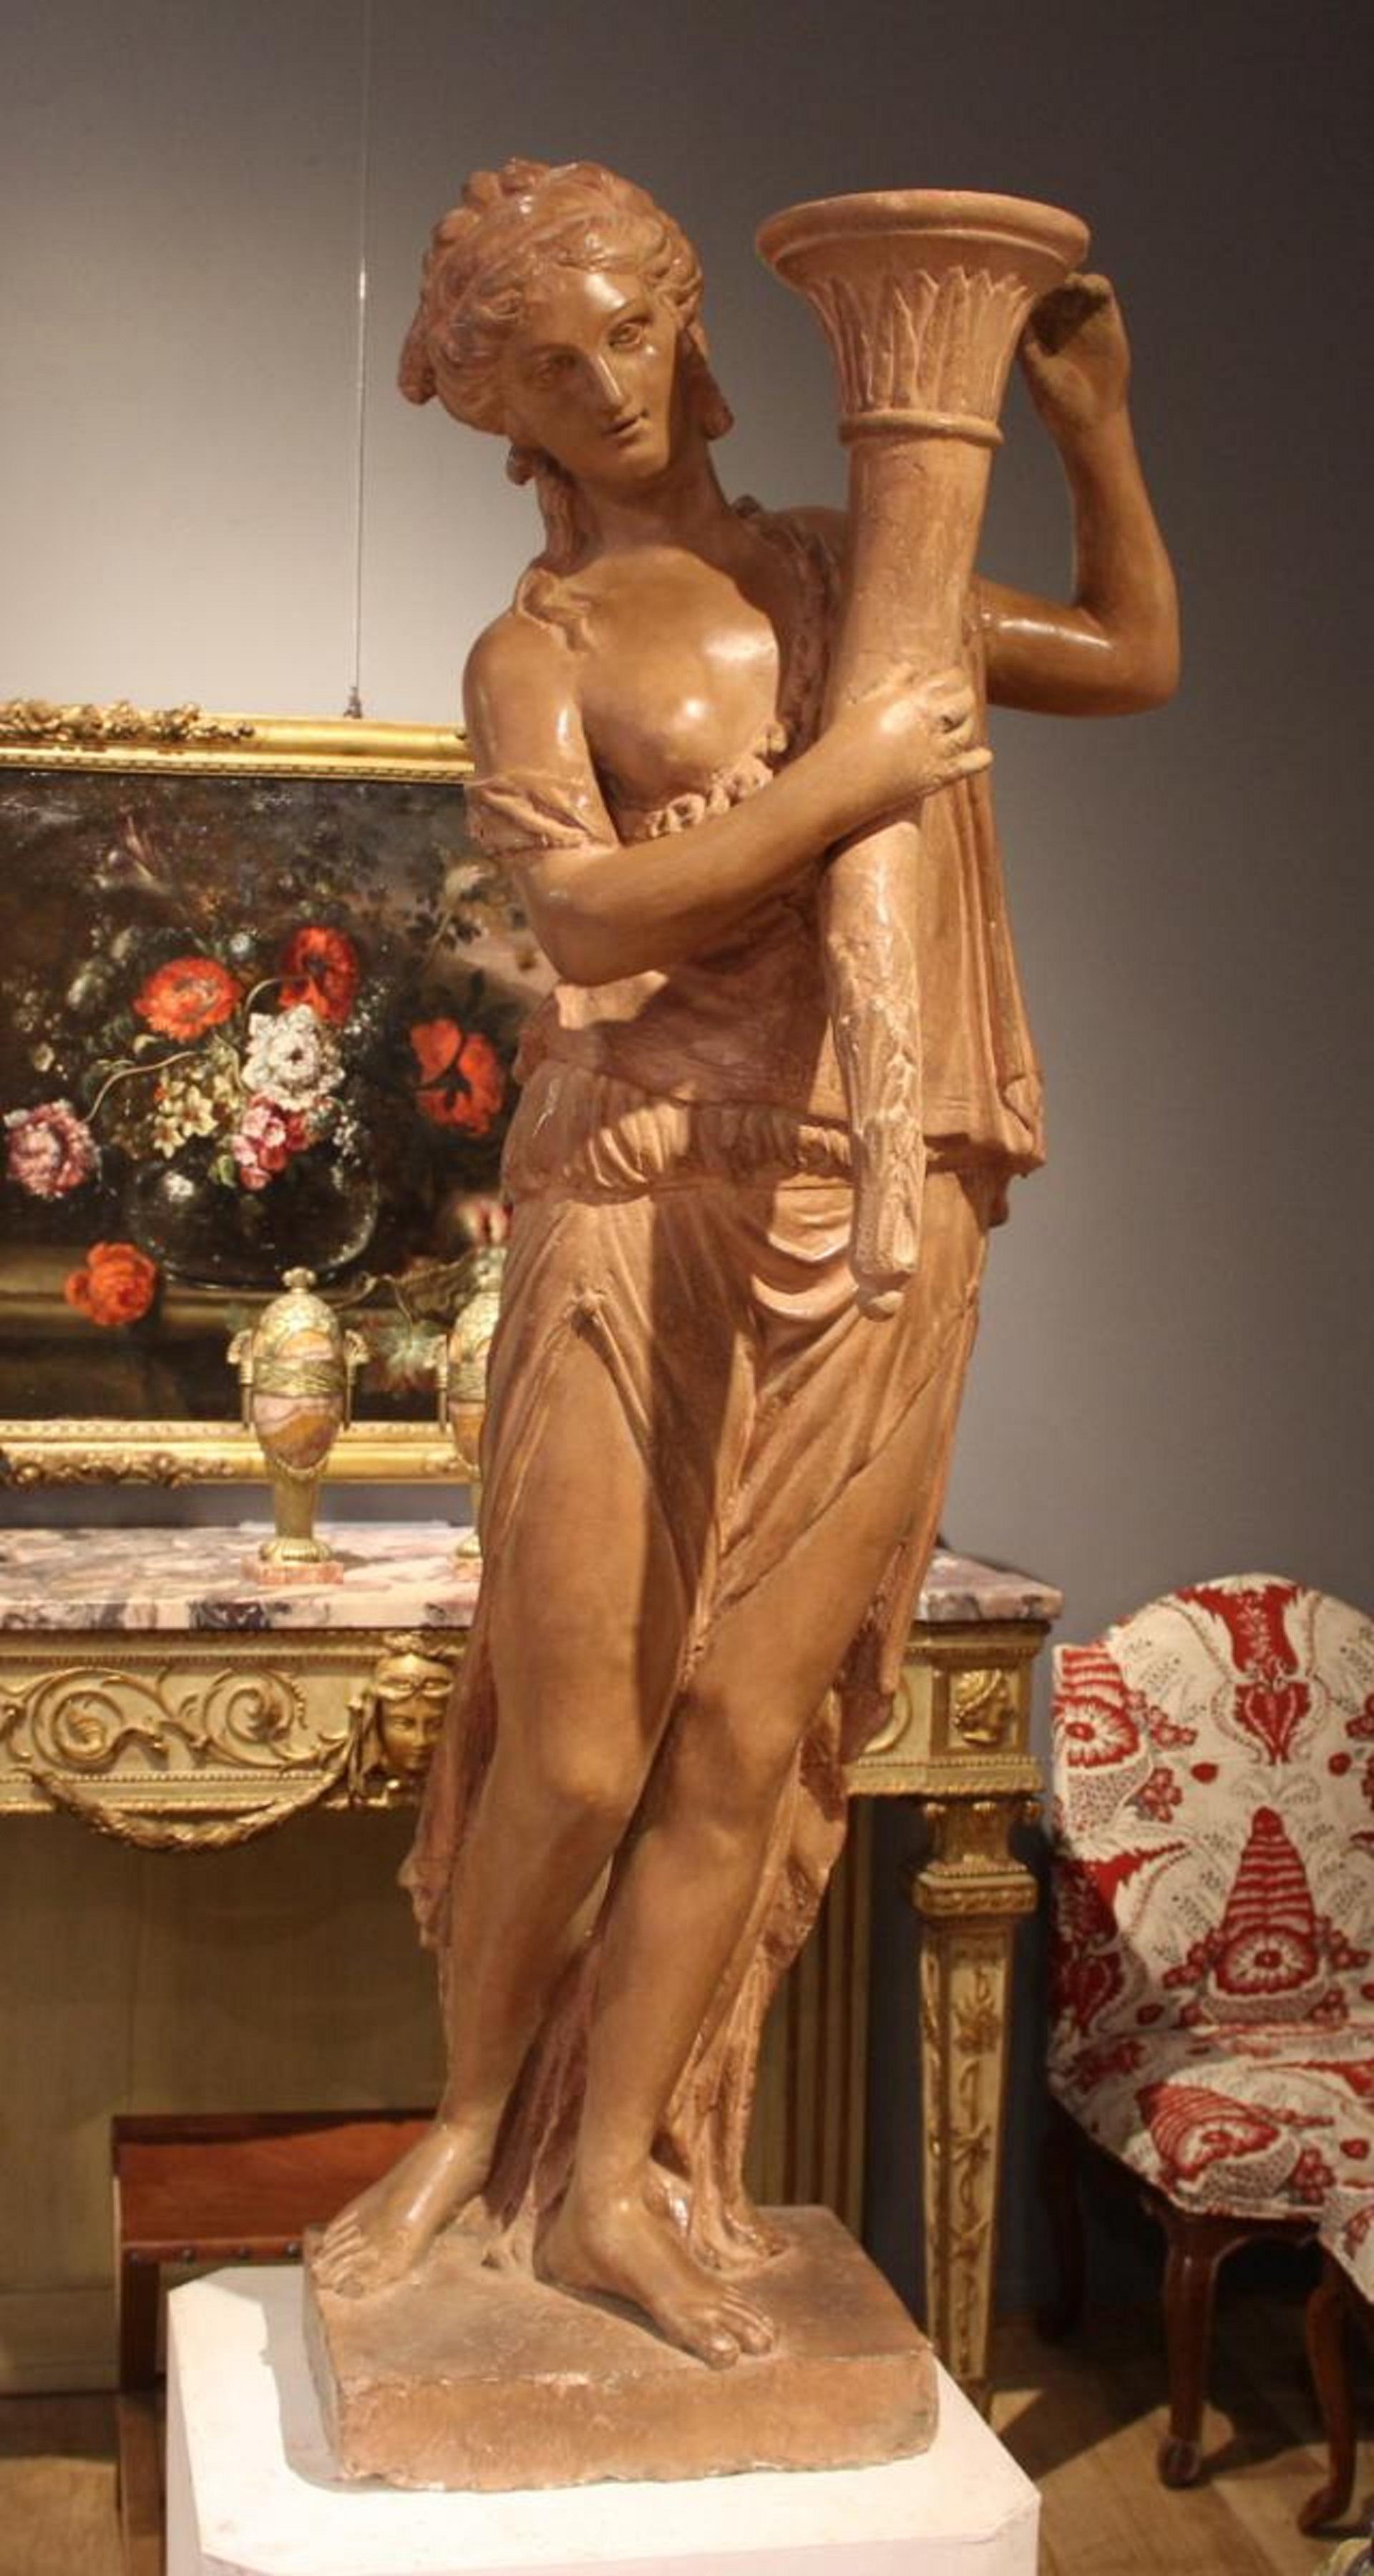 Paar Statuen, die Frauen im antiken Stil darstellen, die Fackeln halten.
Patinierter Terrakotta-Stuck.
Ludwig XVI.
XVIII. Jahrhundert.